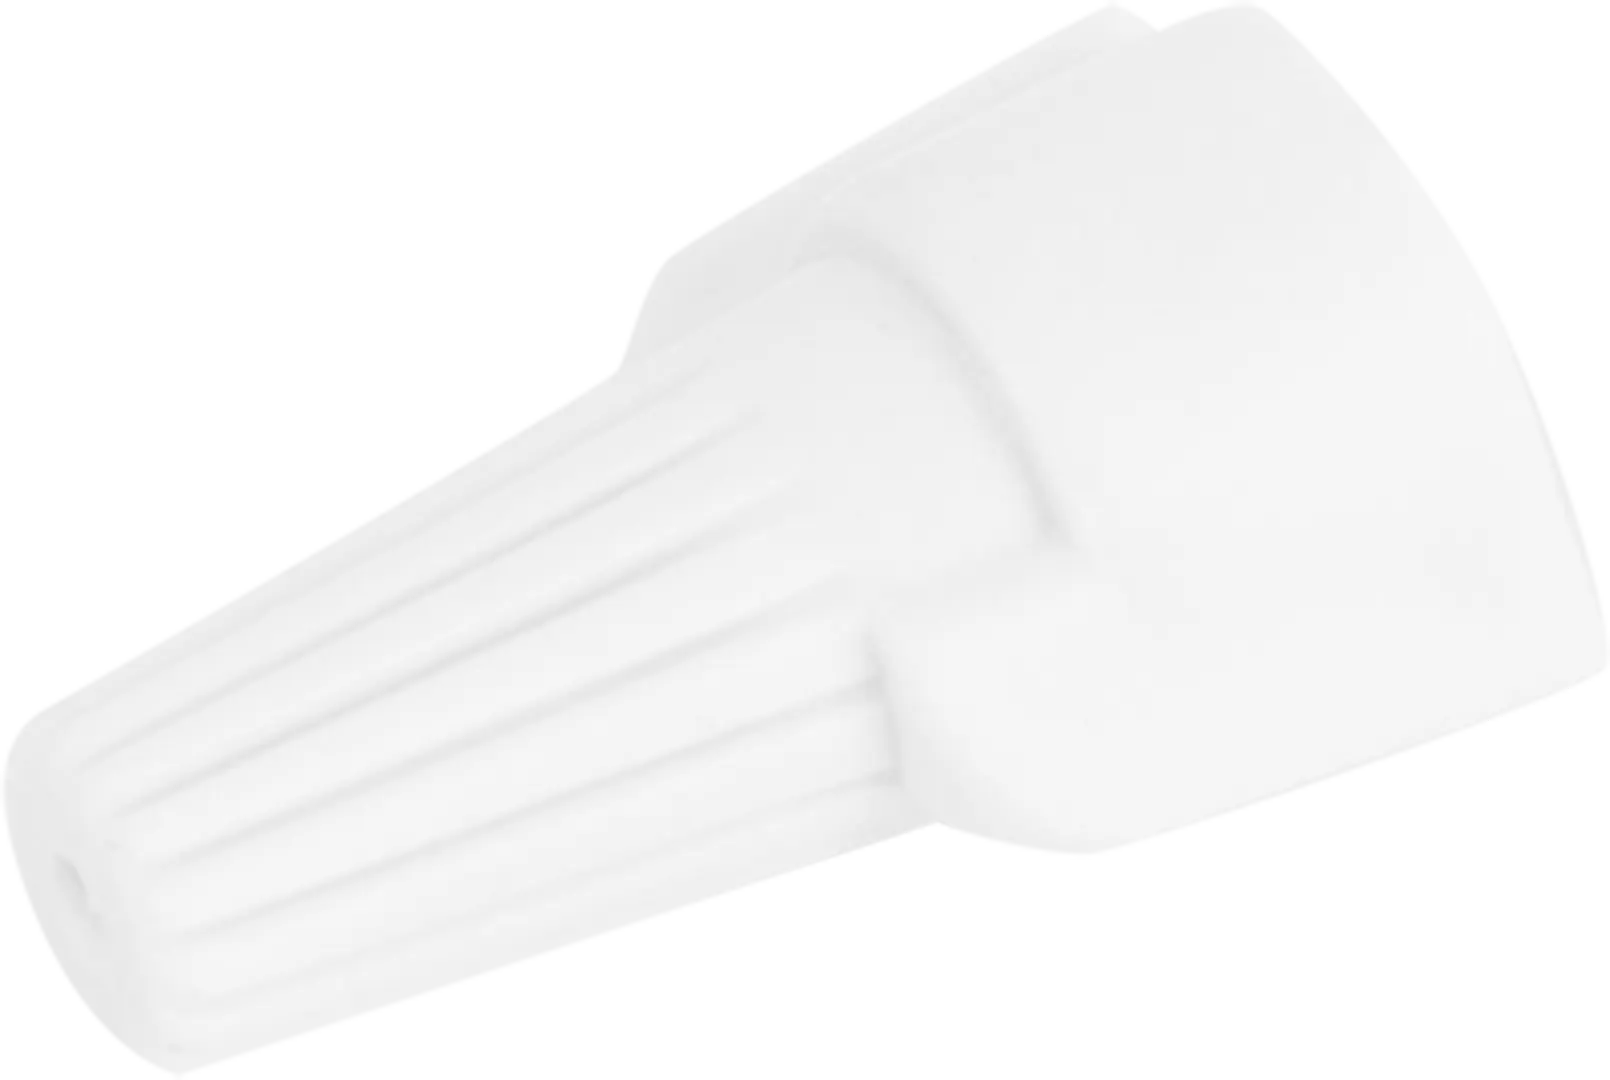 Соединительный изолирующий зажим Duwi СИЗ-Л-3 5-15 мм цвет белый 10 шт. соединительный изолирующий зажим duwi сиз 4 3 5 10 мм желтый 10 шт